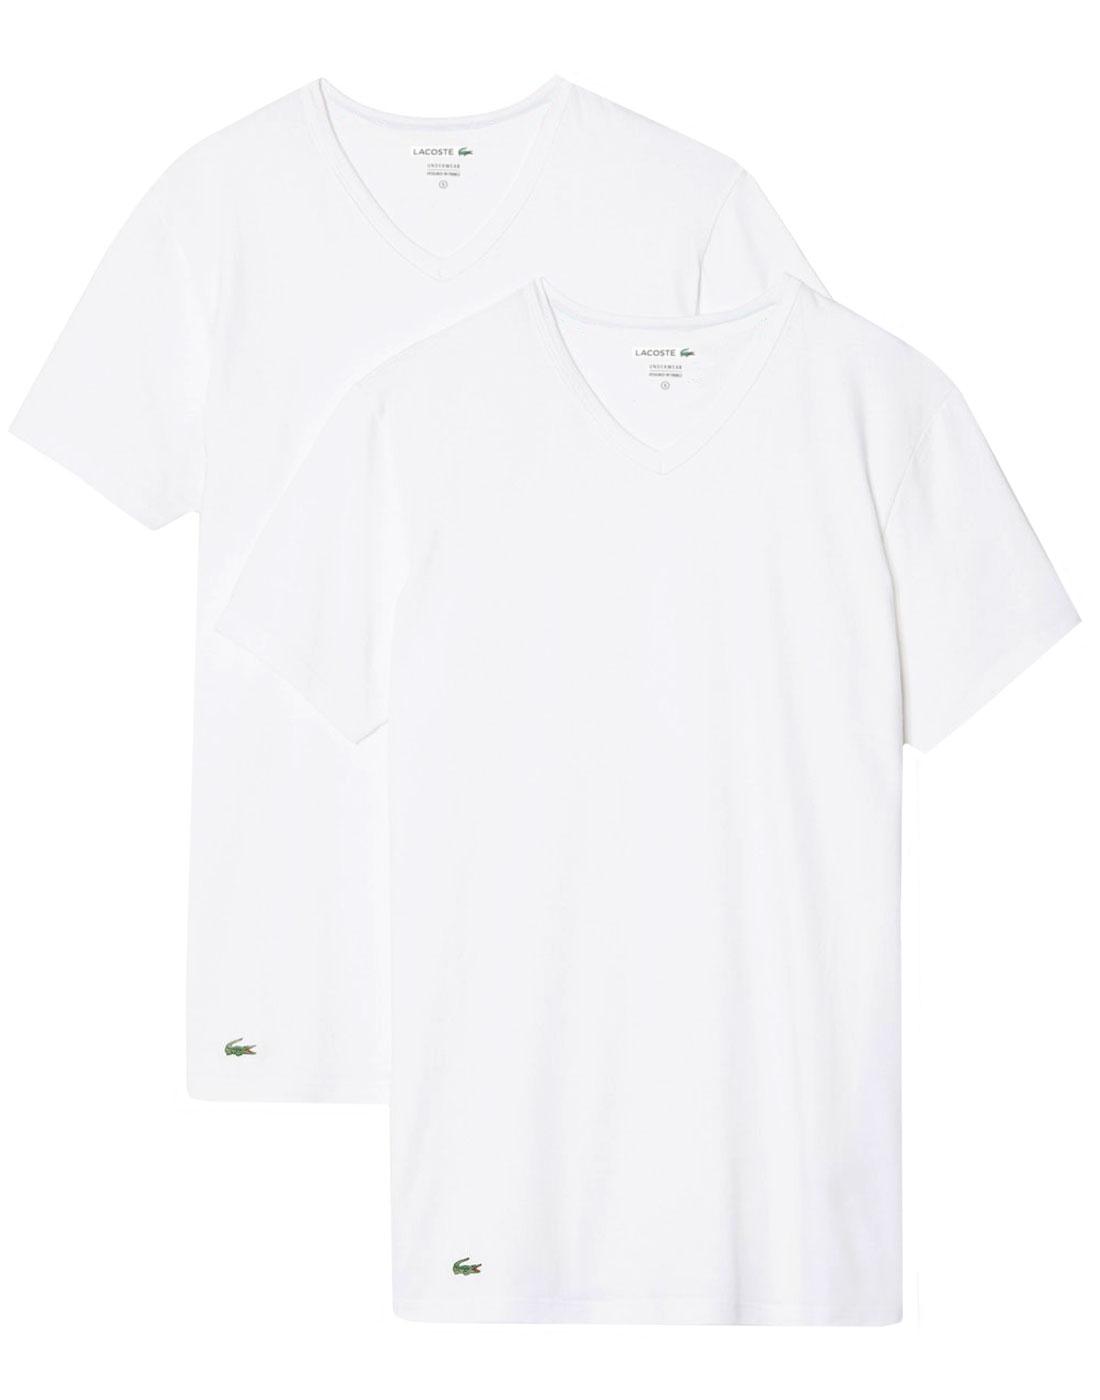 LACOSTE Men's Retro 2 Pack V-Neck T-Shirt - WHITE